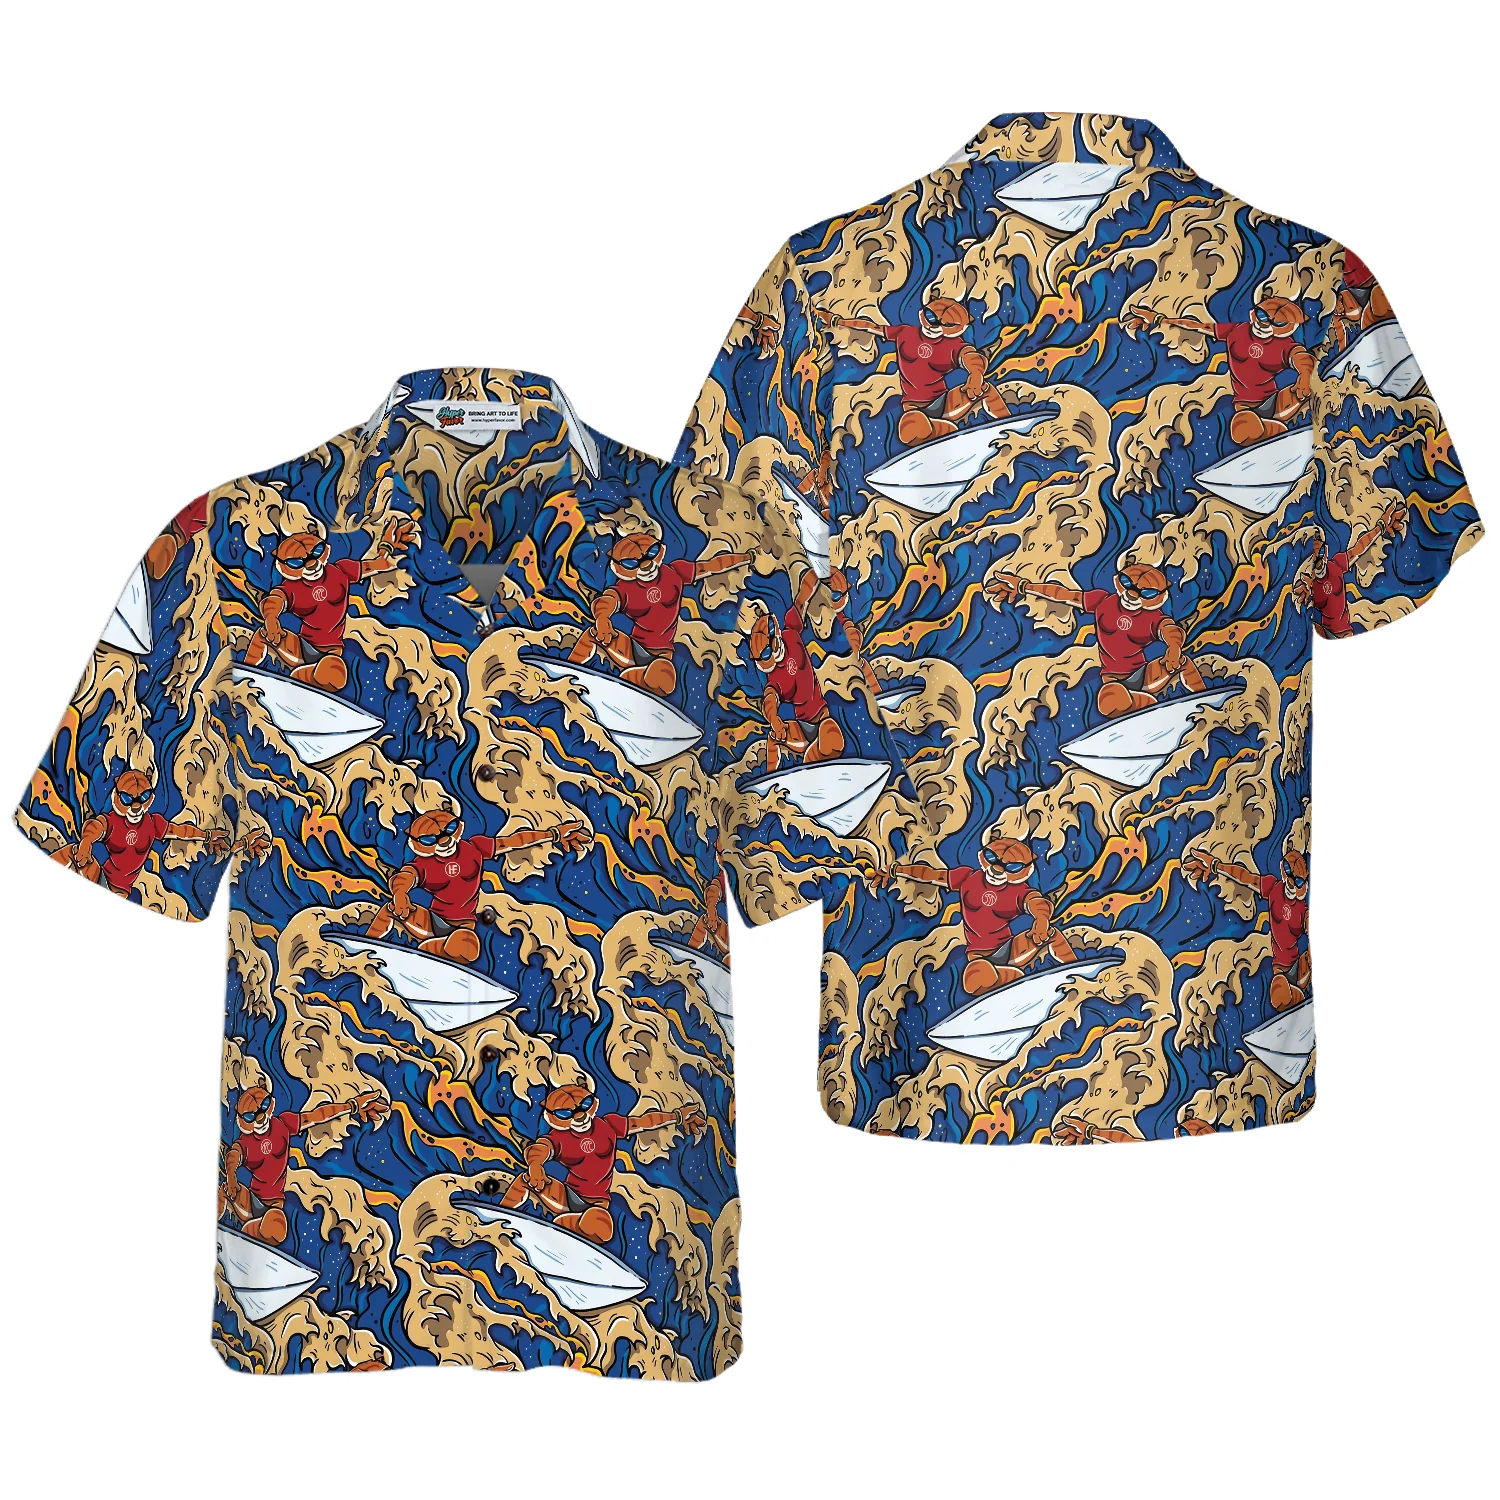 Tiger Surfer Roaring Waters Hawaiian Shirt Aloha Shirt For Men and Women